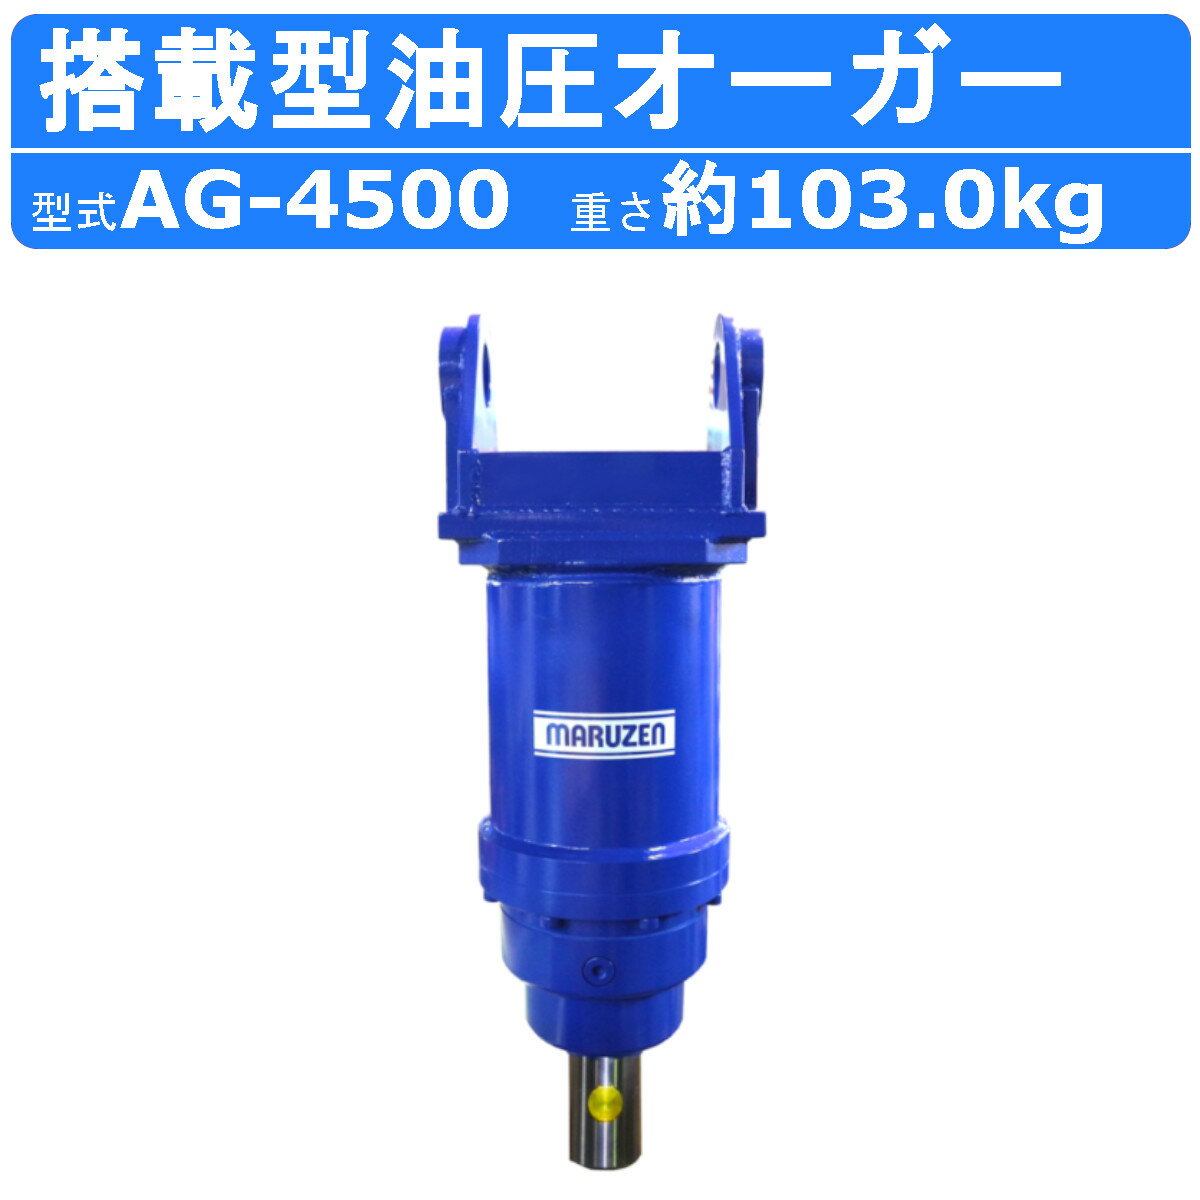 丸善工業 搭載型油圧オーガー AG-4500